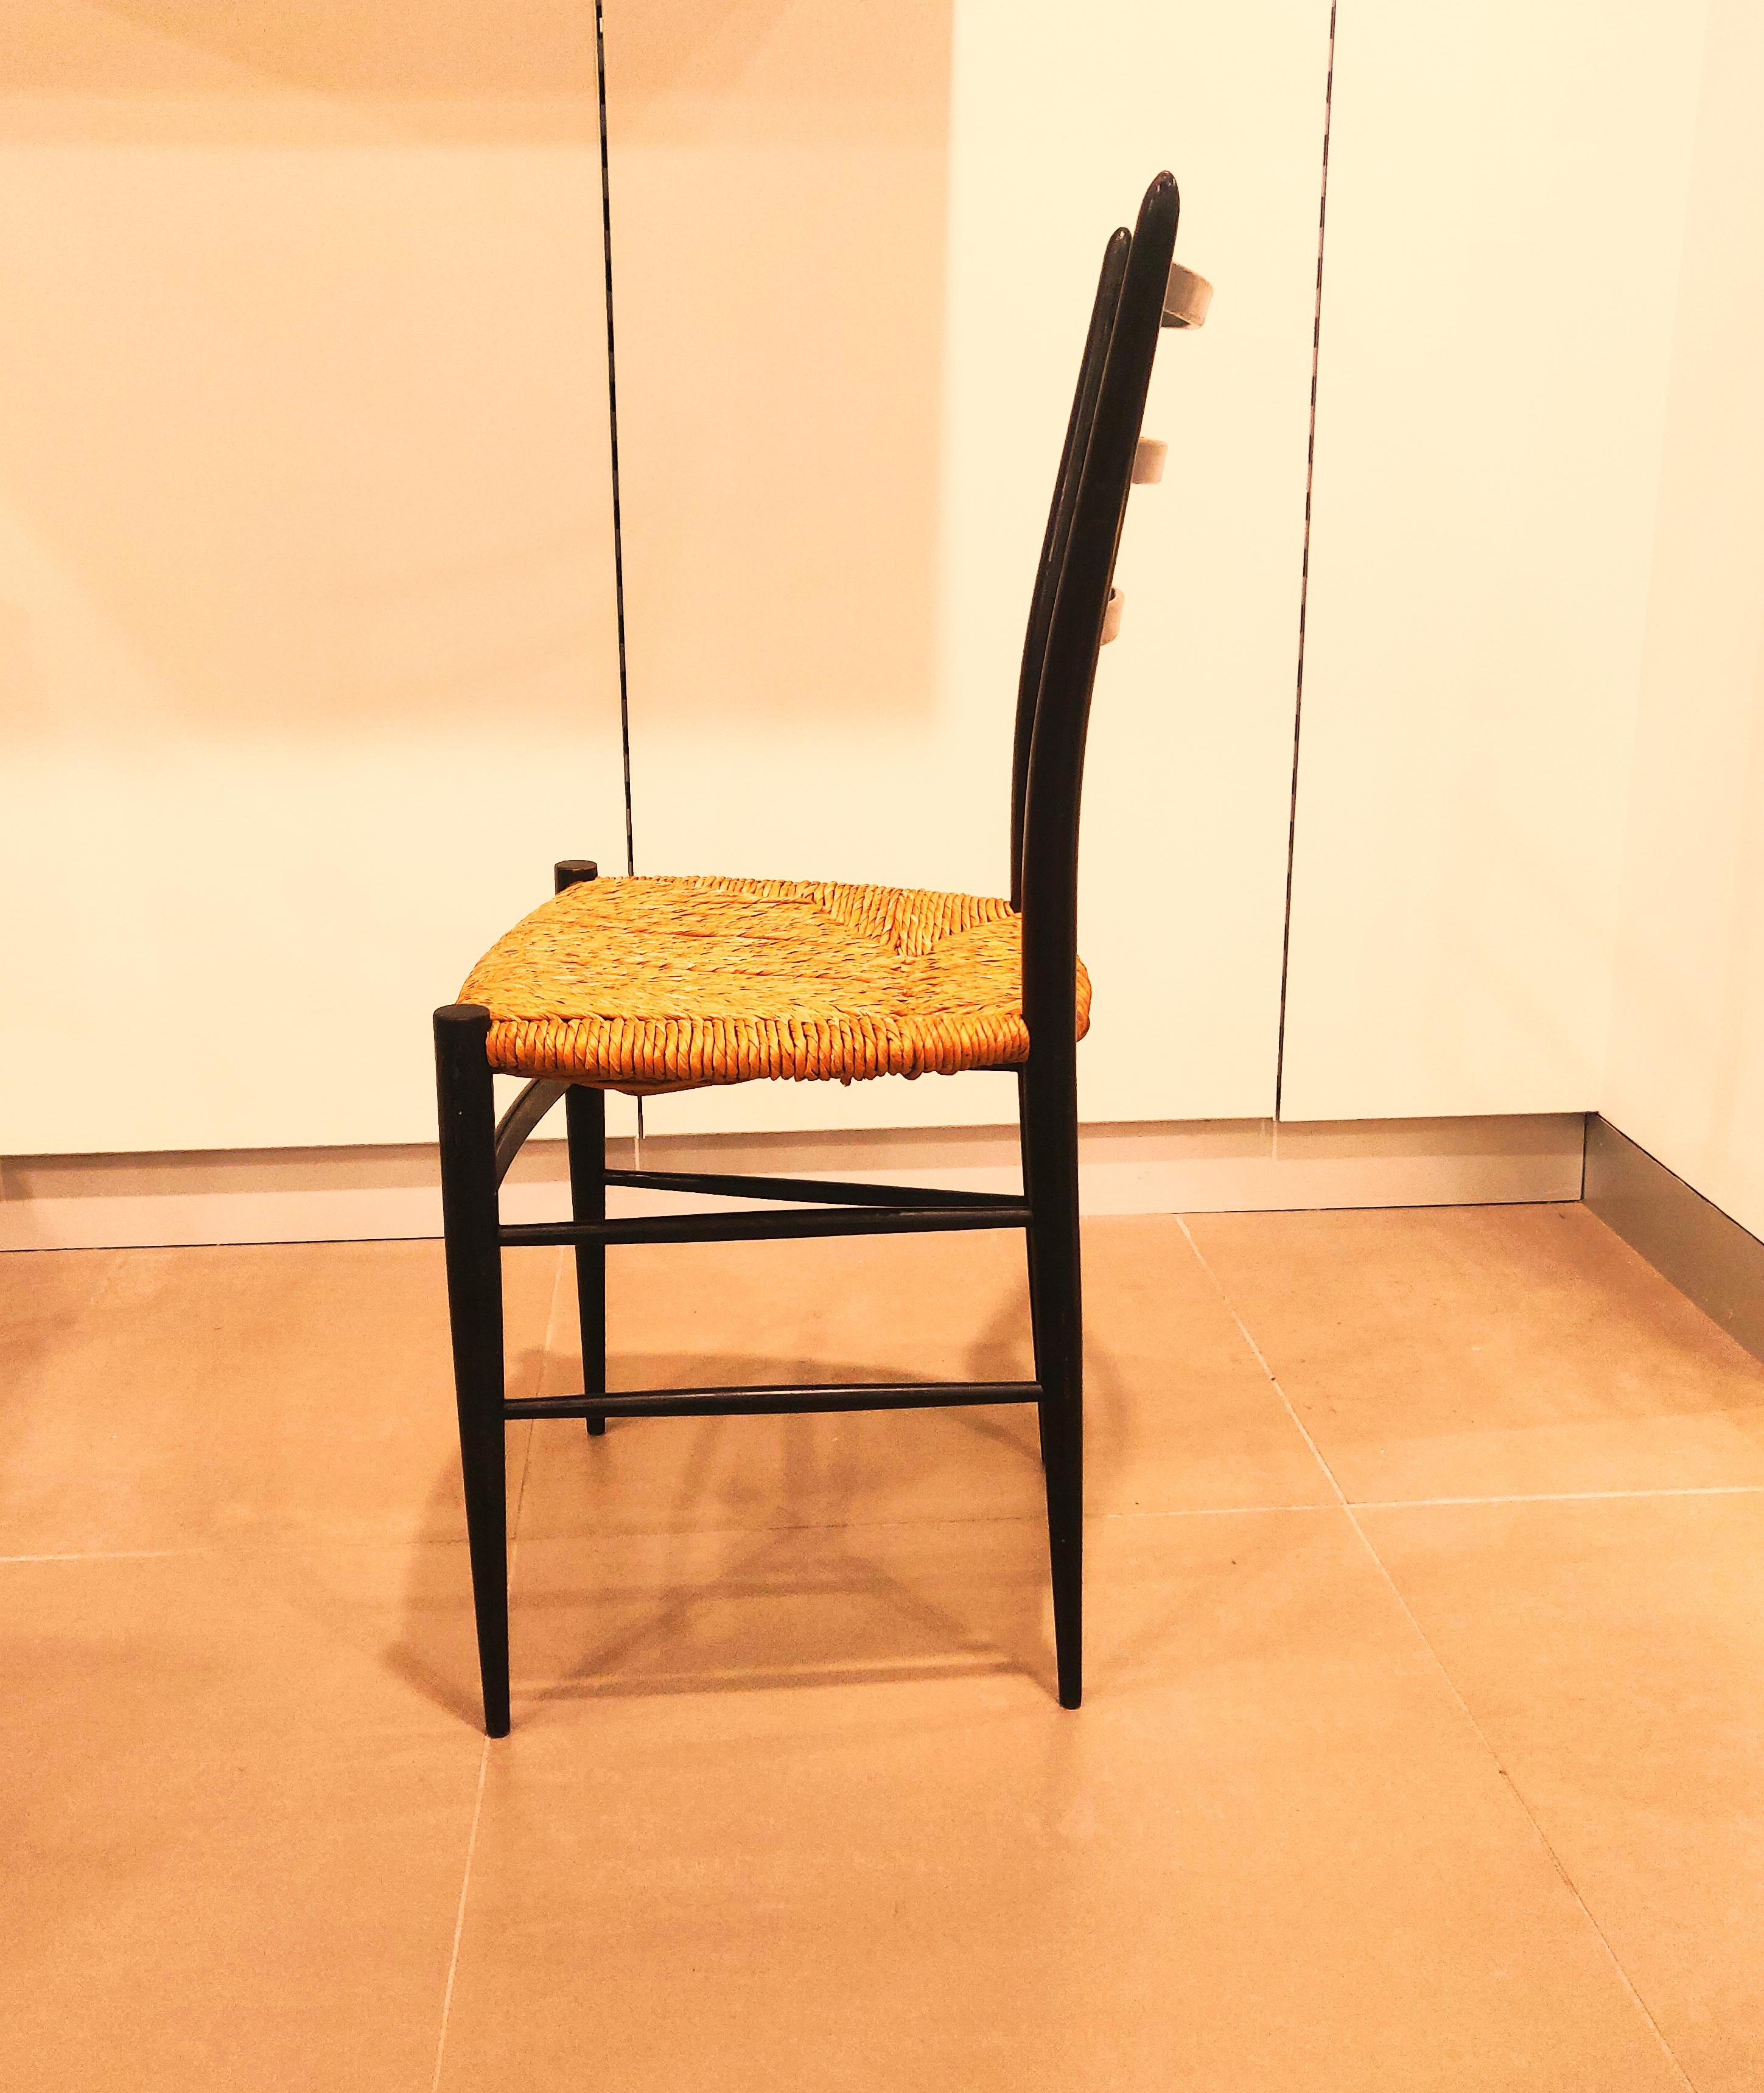 Chaise Chiavari Spinetto très élégante et d'aspect minimal, avec une structure ébonisée noire et une assise en osier, fabriquée dans les années 1960 par Chiavari, en Italie. Le cadre léger est, malgré son apparence fragile, ferme et constitue un